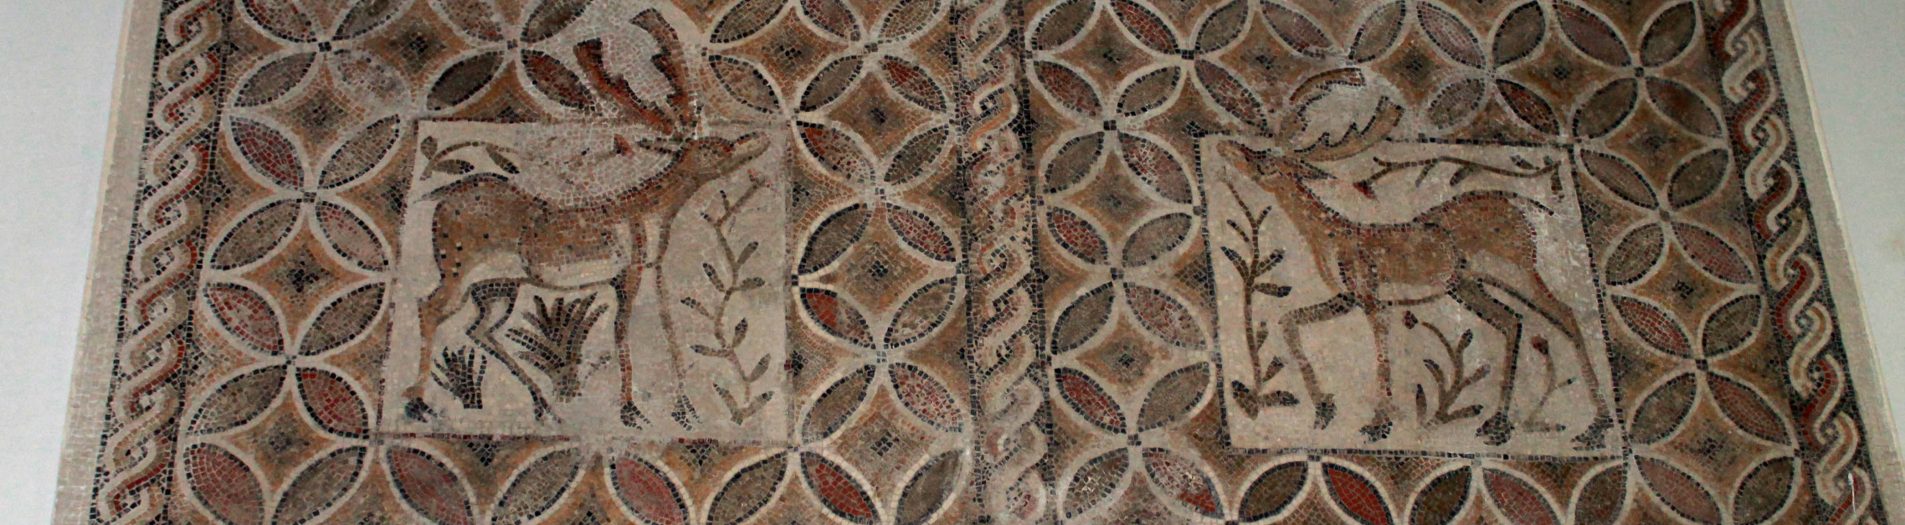 Les mosaïques du musée archéologique de Sfax